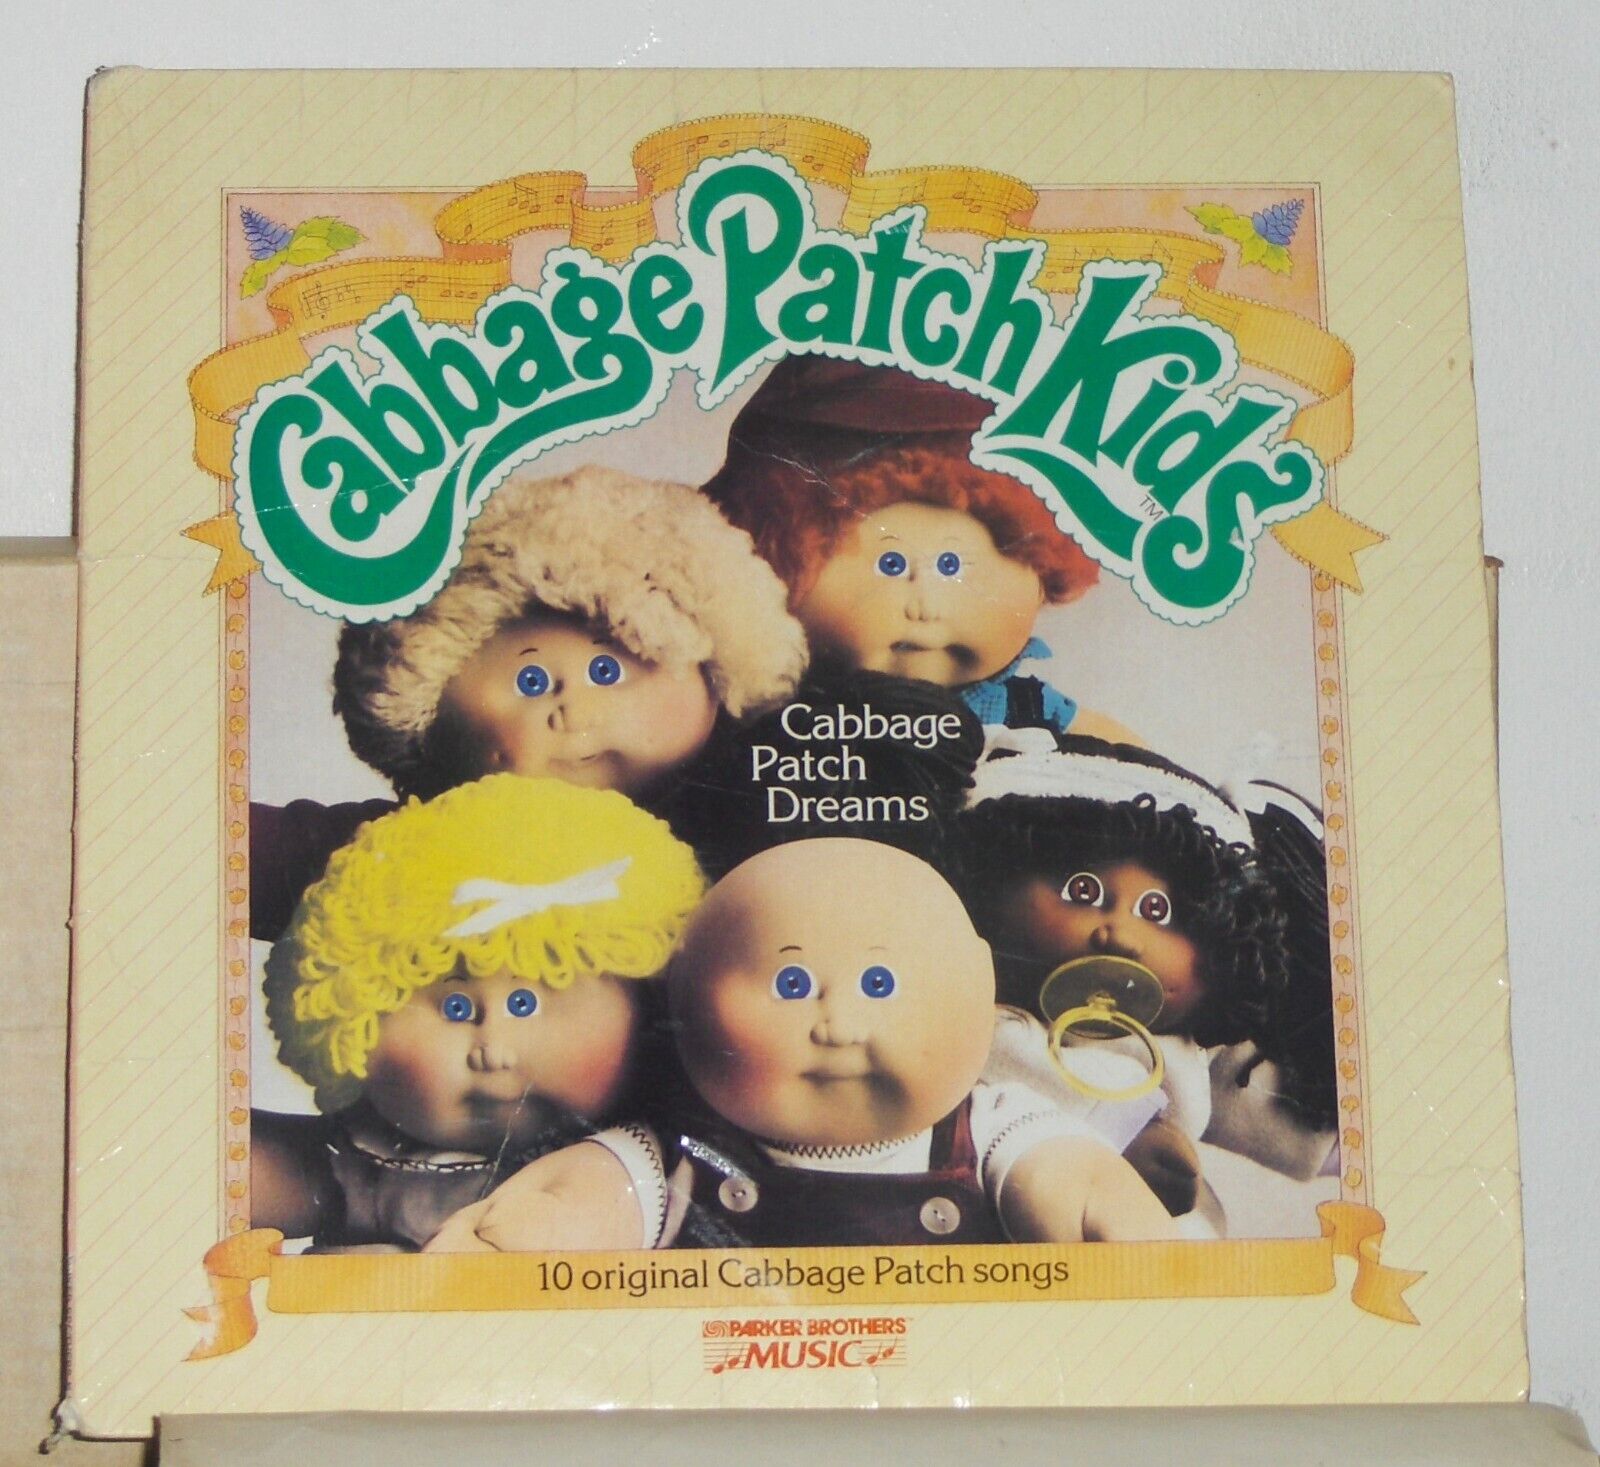 Cabbage Patch Kids – Cabbage Patch Dreams - 1984 Vinyl LP Record Album